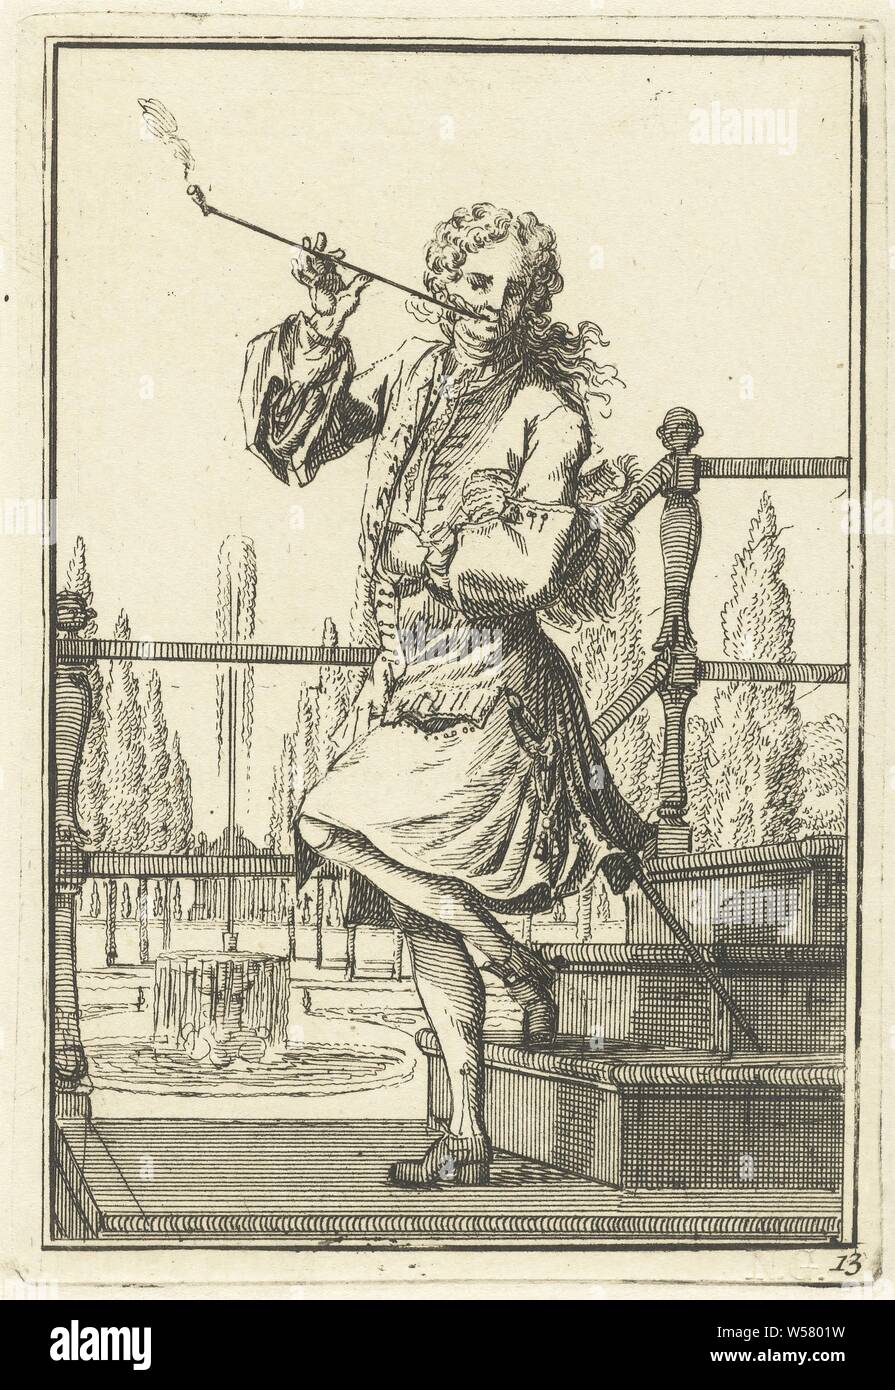 Rohr-sprechenden Mann niederländische Kostüme (Titel der Serie), Rohr-sprechenden Mann, gekleidet nach Dutch Fashion von 1710-1720. In voller Länge auf einen Schritt, der auf eine Landung. Im Hintergrund ein Garten mit Brunnen. Der Druck ist Teil einer 16-teiligen Serie von Drucken mit Darstellungen der Niederländischen Kostüme., Pfeife, Tabak, Bekleidung, Kostüm (Kleidung der Männer), die Europäer (mit Namen) (Kostüm), Adolf van der Laan, C. 1710-1755, Papier, Ätzen, H 136 mm x B 92 mm Stockfoto